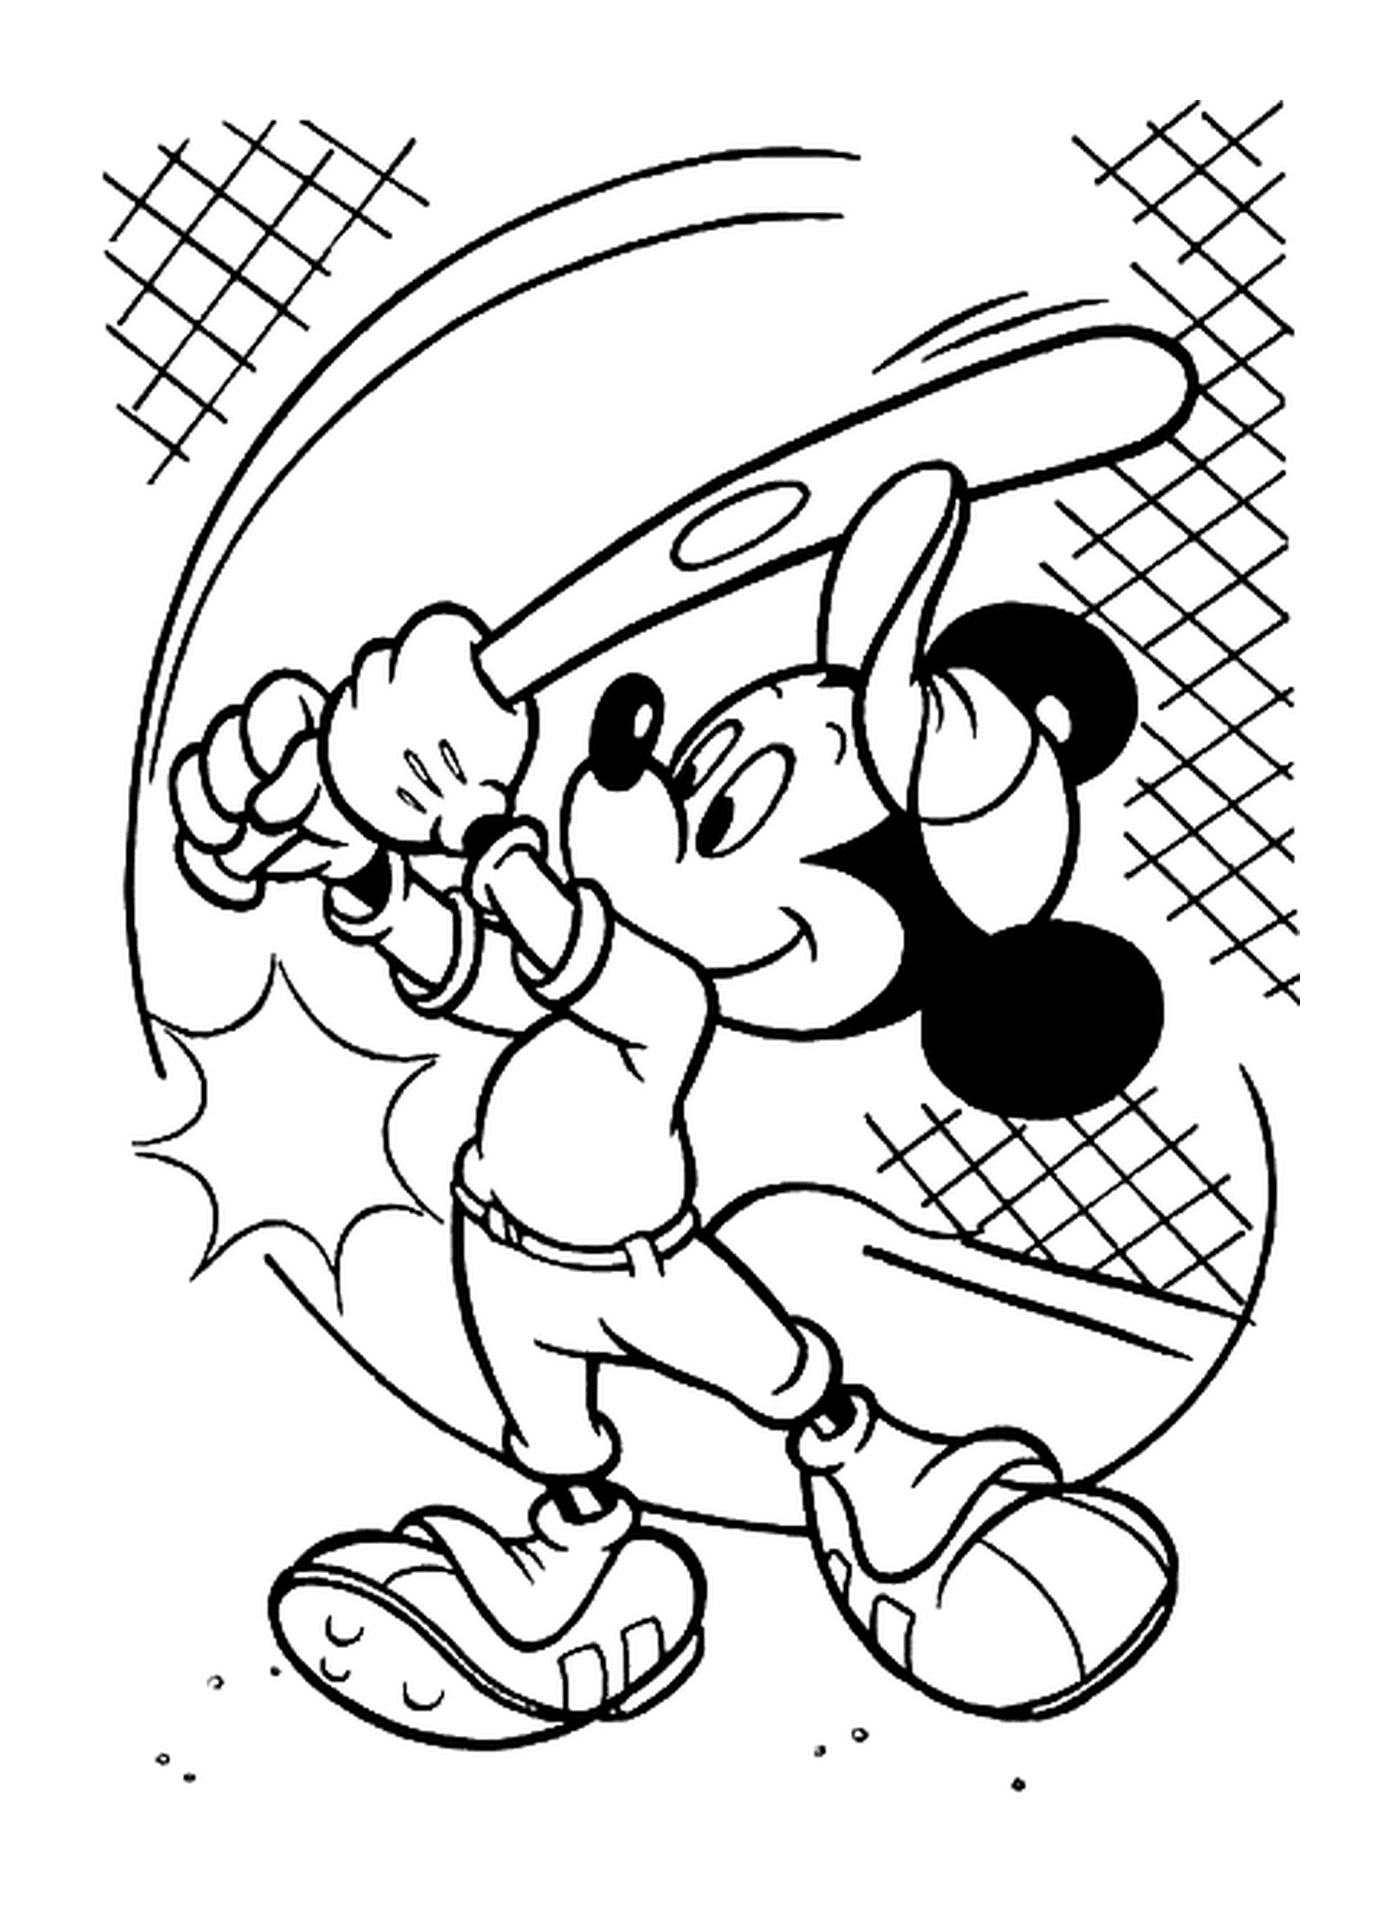  Disegno di Mickey che gioca a baseball: tenere in mano una mazza da baseball 